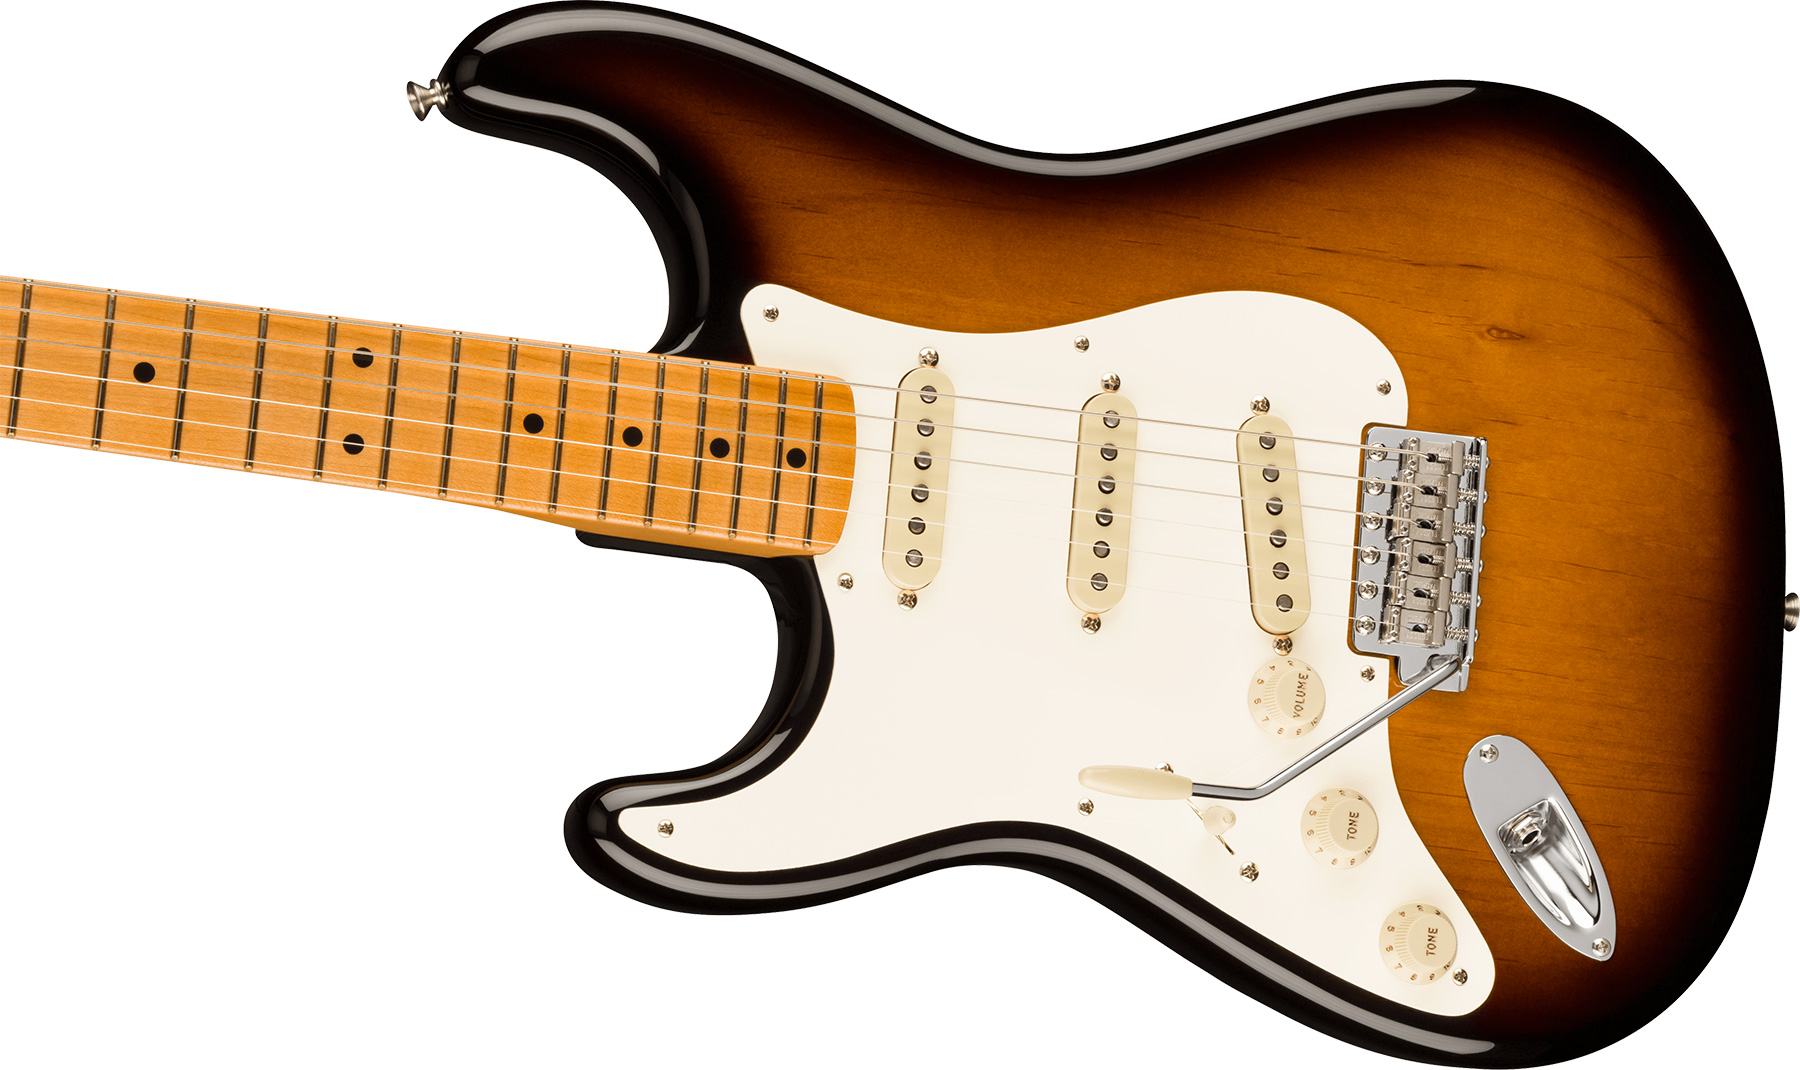 Fender Strat 1957 American Vintage Ii Lh Gaucher Usa 3s Trem Mn - 2-color Sunburst - Linkshandige elektrische gitaar - Variation 2